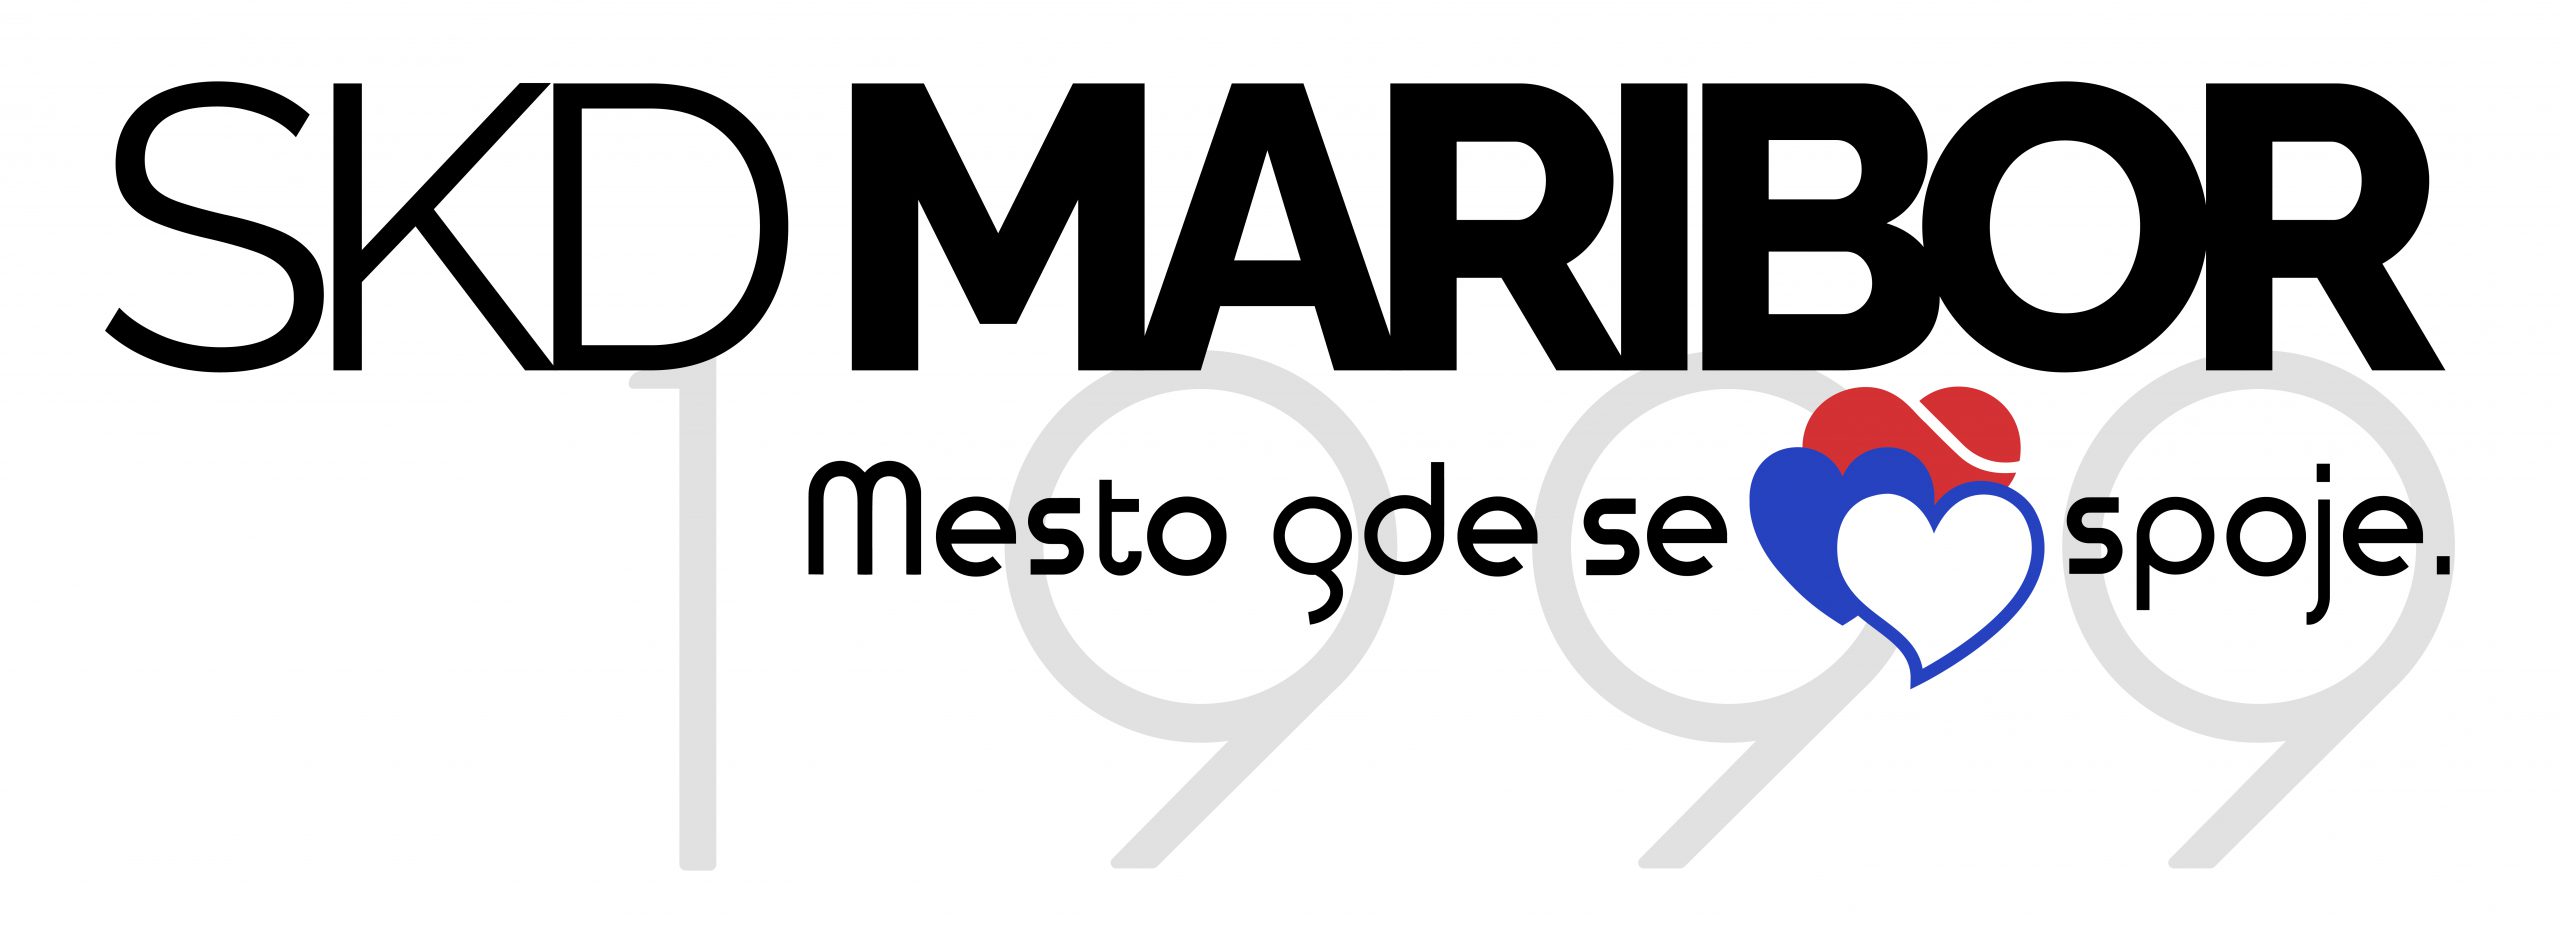 SKD Maribor logo